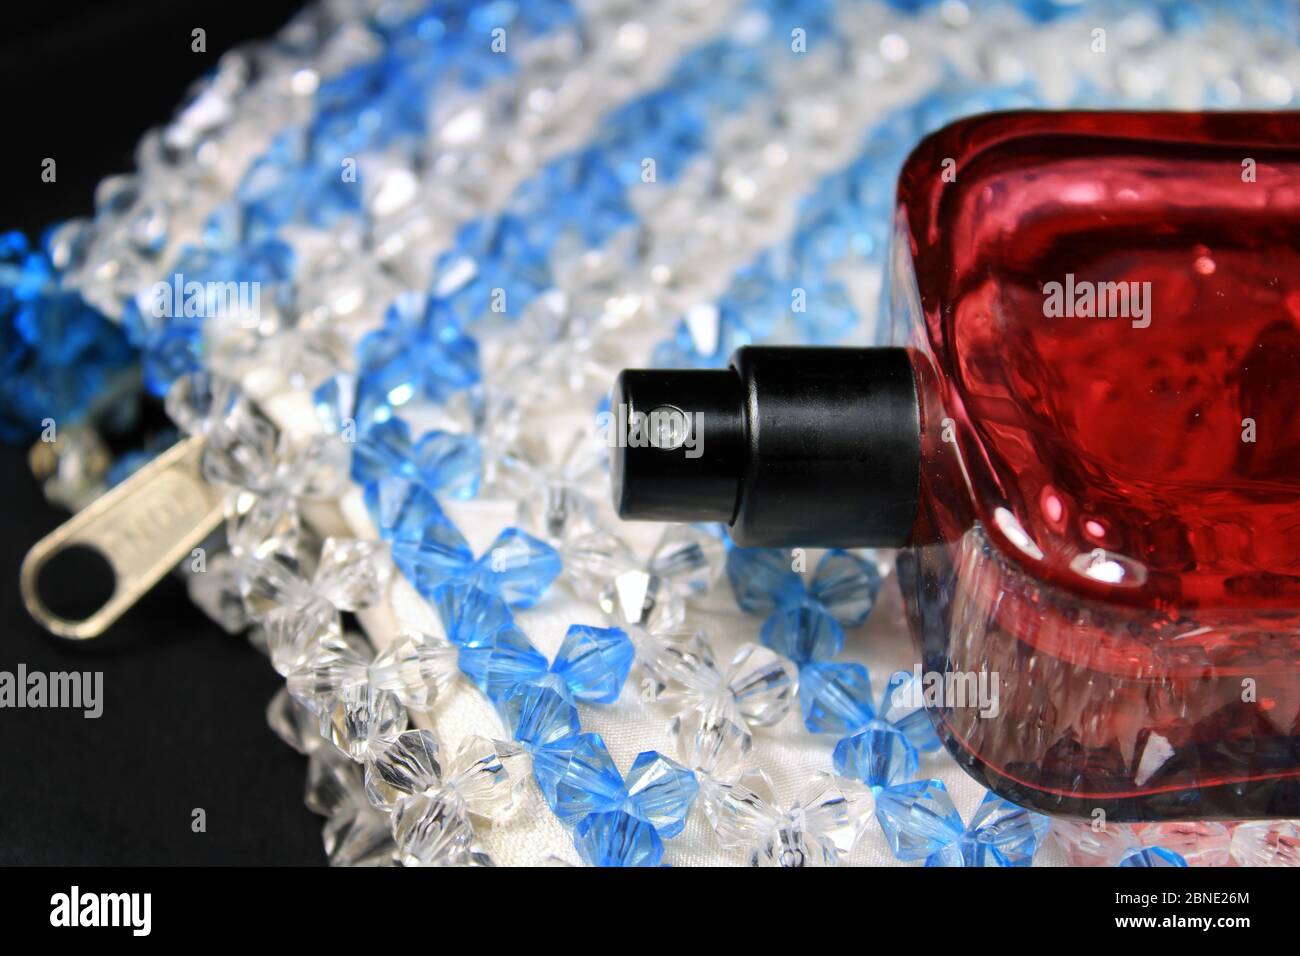 Rote Parfüm Flasche, natürliches Spray. Rote Farbe Männer Parfüm Flasche  auf bunten Plastiktüte mit weiblichen Accessoires isoliert Stockfotografie  - Alamy